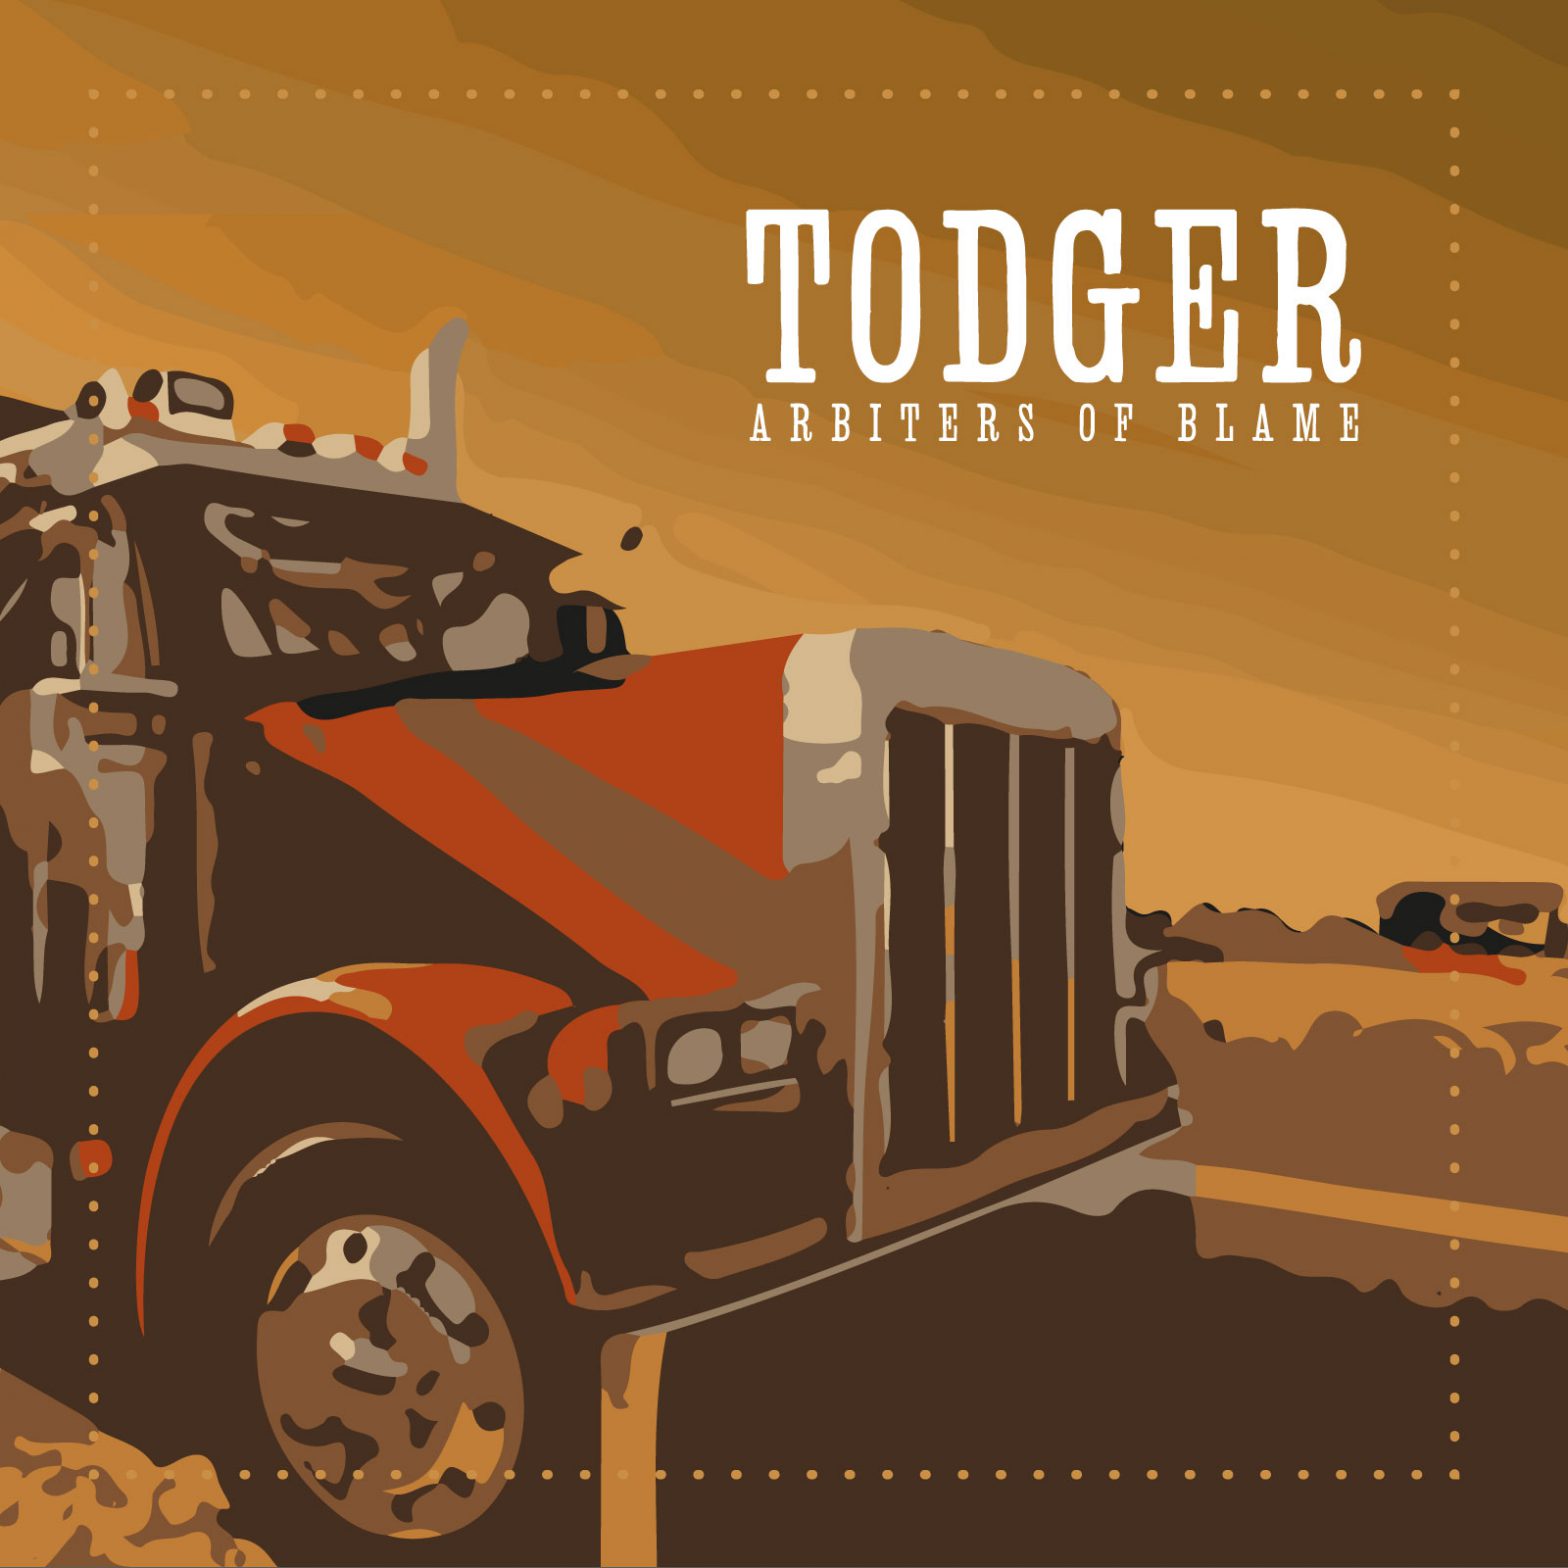 album cover art for Todgers arbiters of blame music album